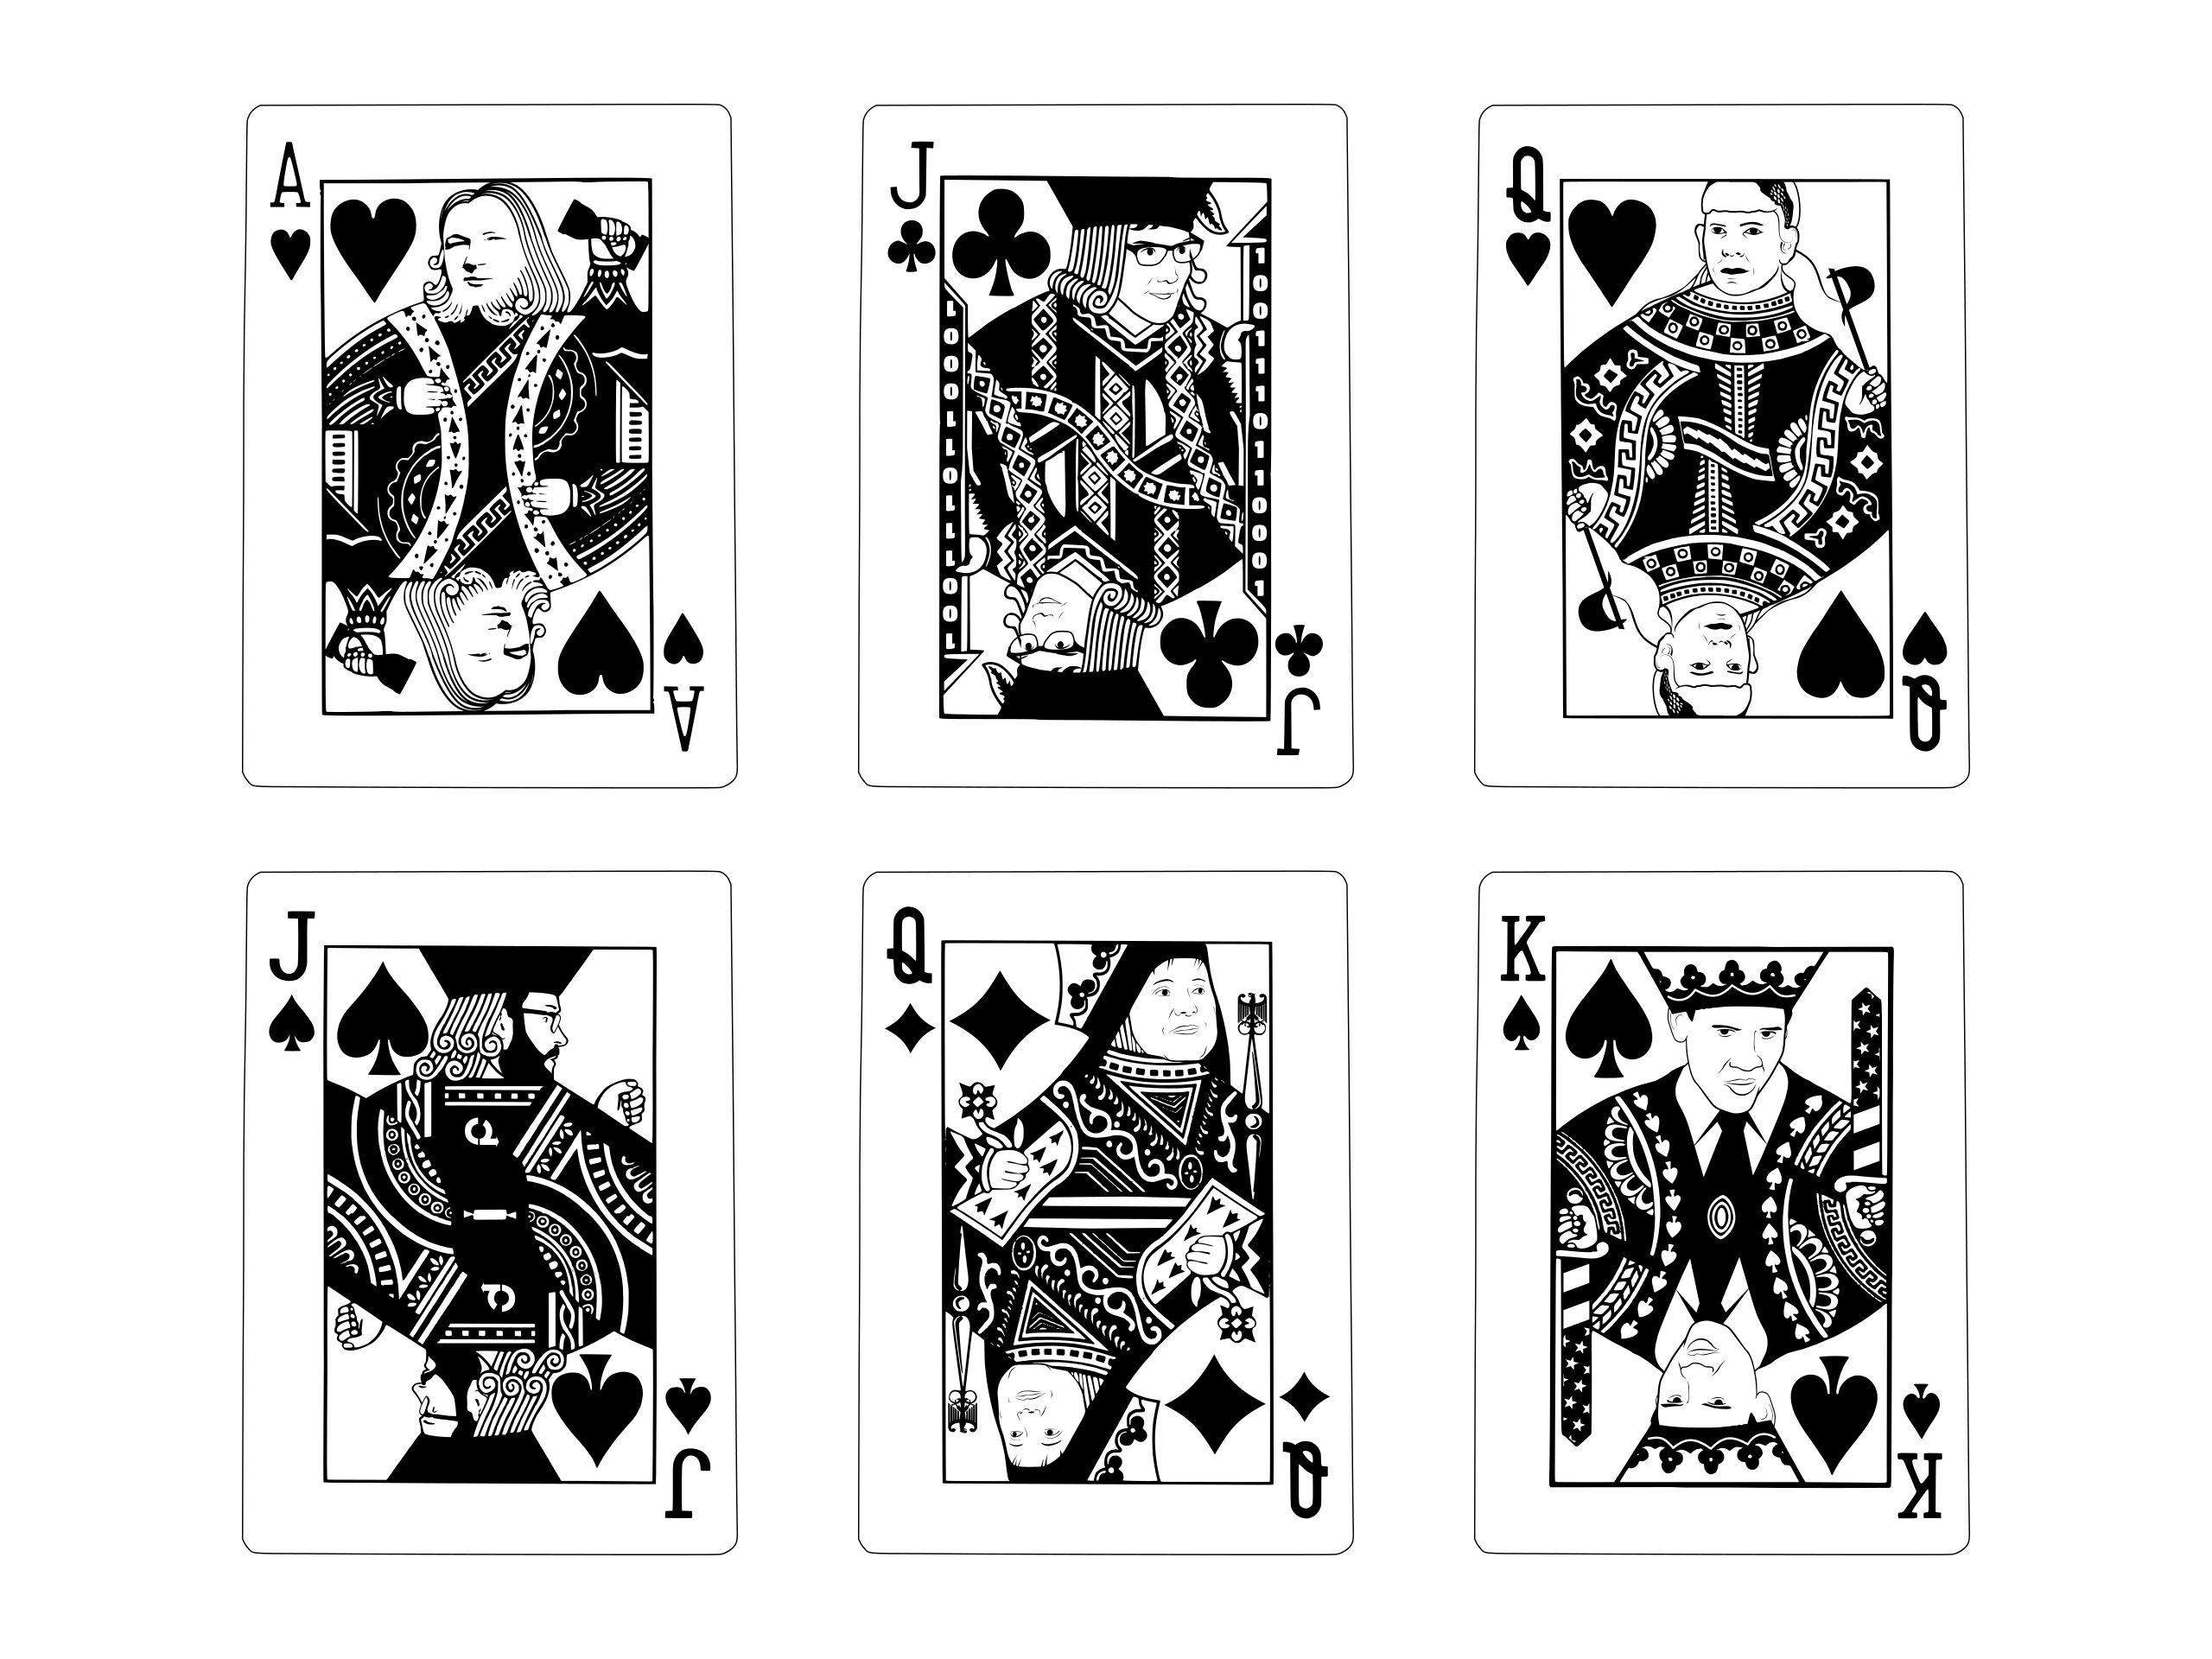 6 playing cards depicting Julian Assange, Jacob Appelbaum, Birgitta Jónsdóttir, Daniel Domscheit-Berg, Angela Merkel and Barack Obama as black jacks, queens and kings